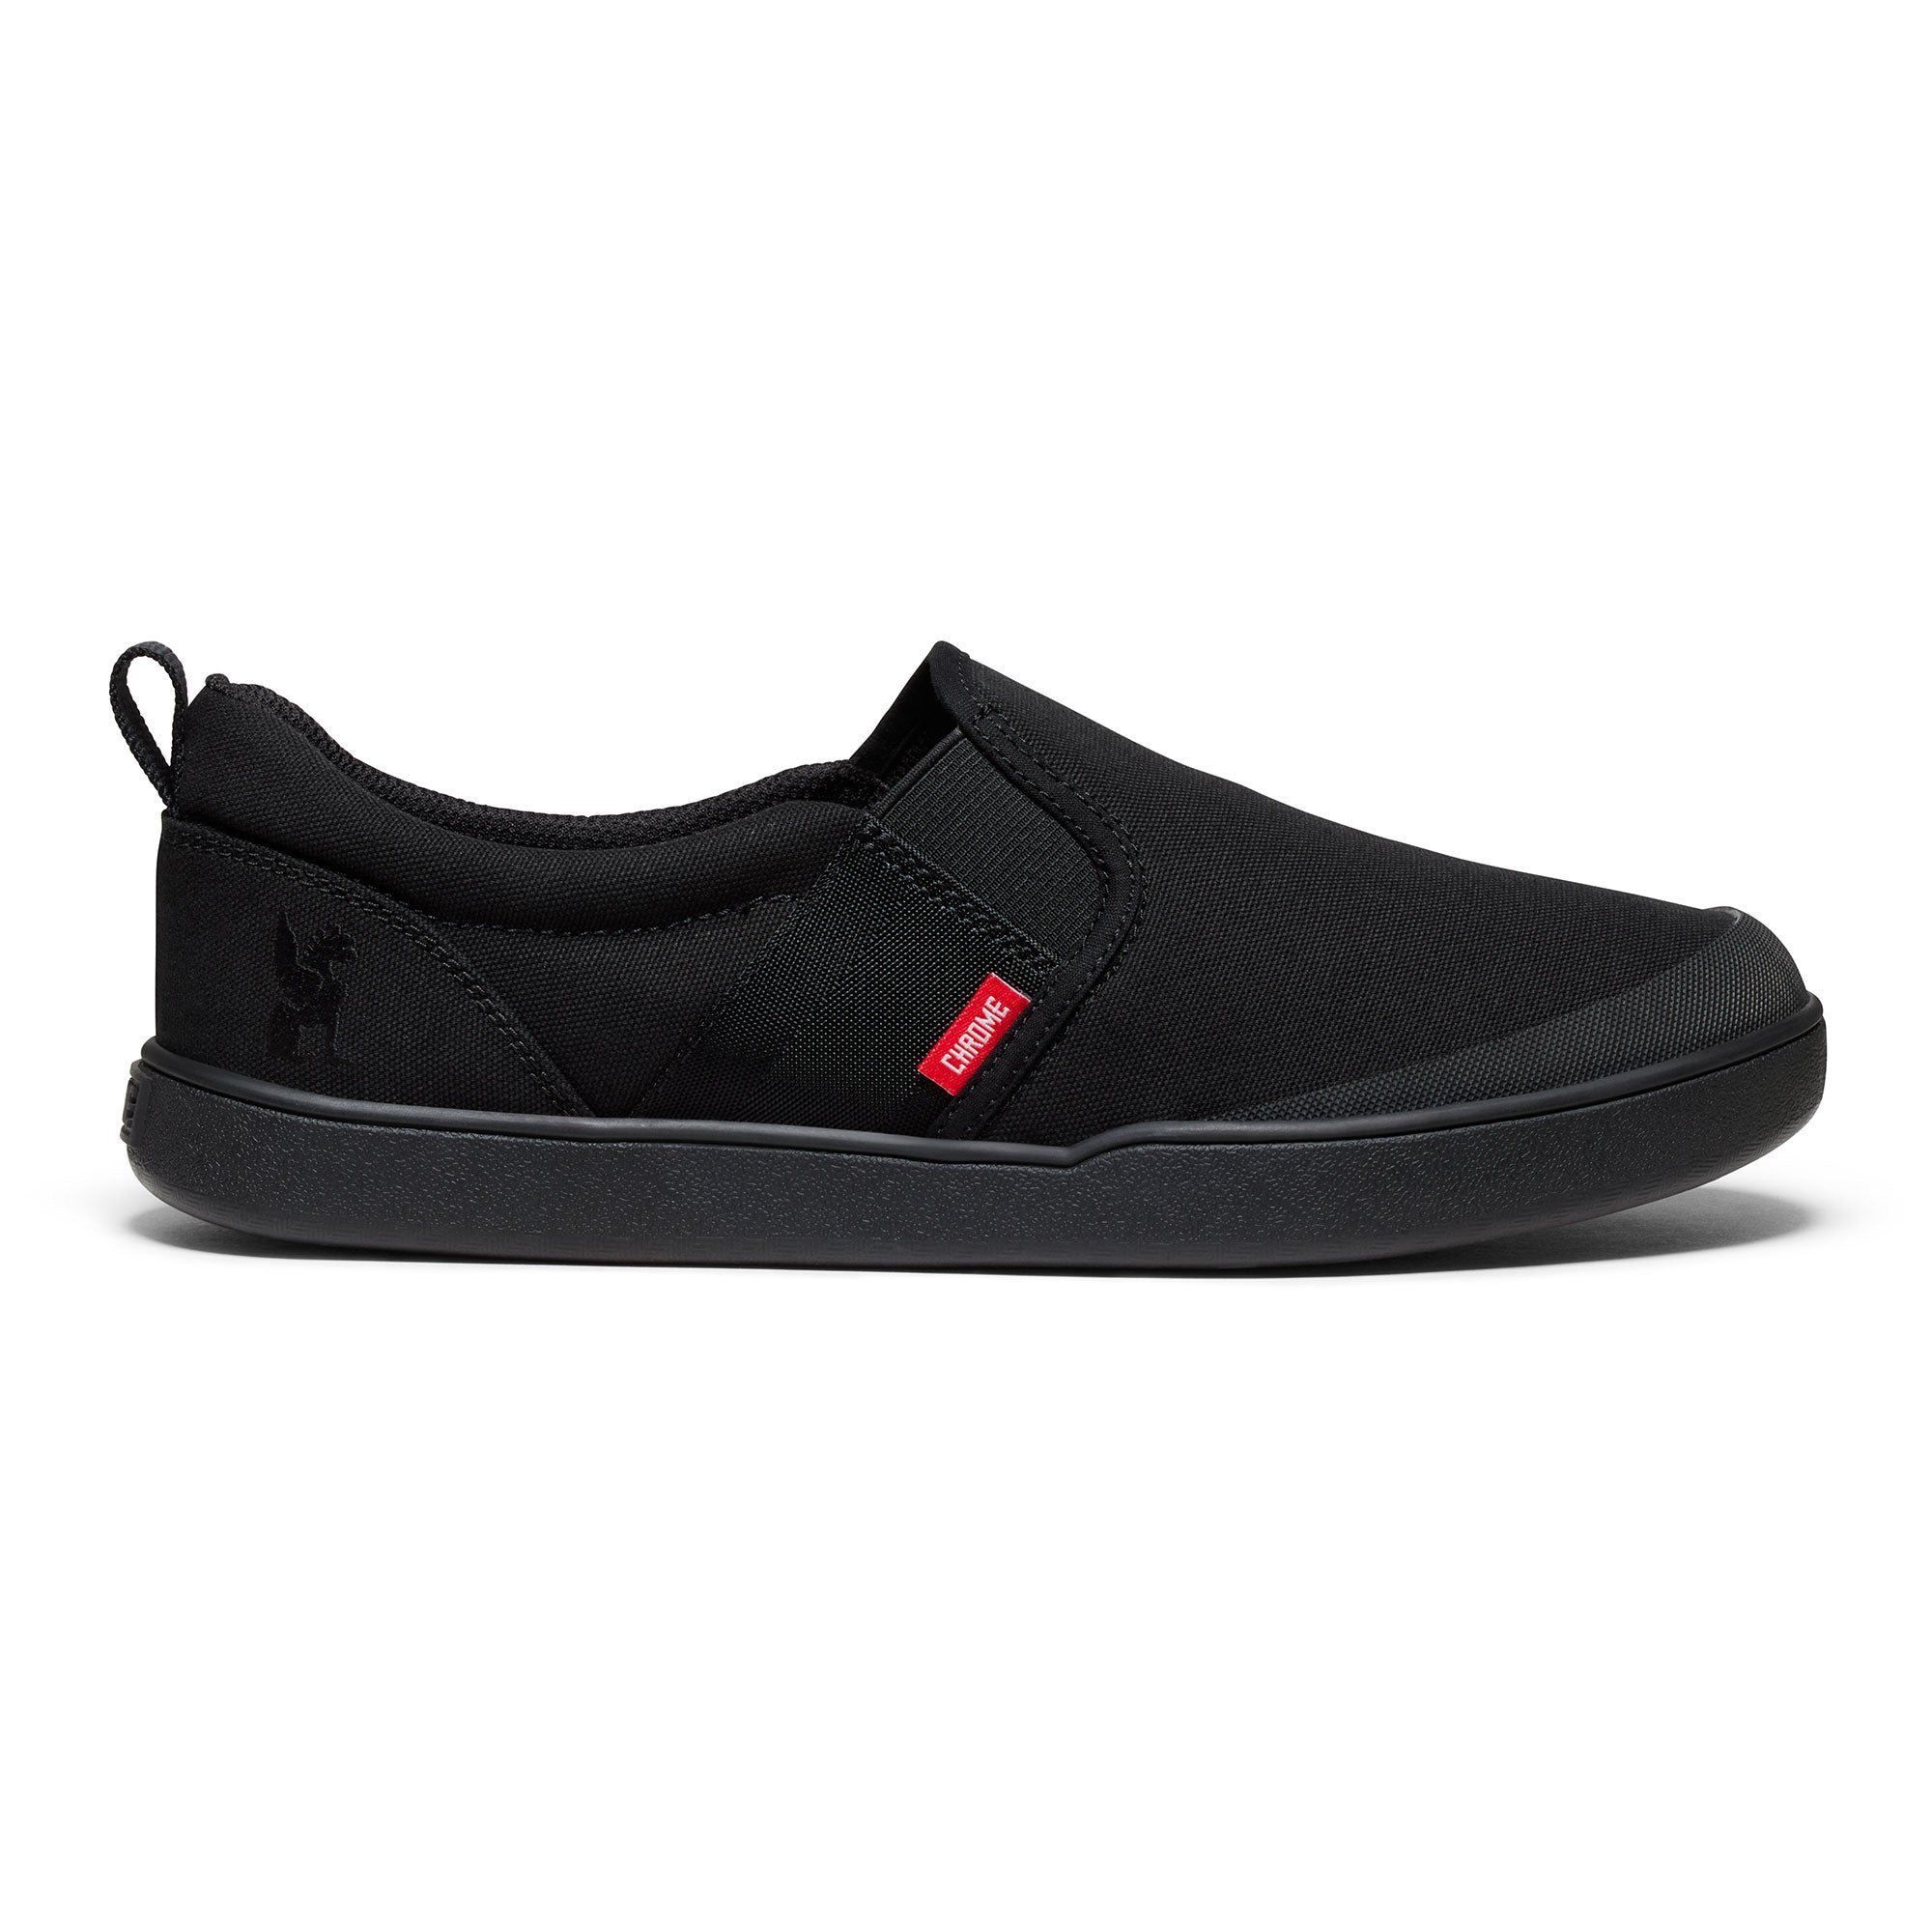 Boyer slip on comfort shoe in black #color_black